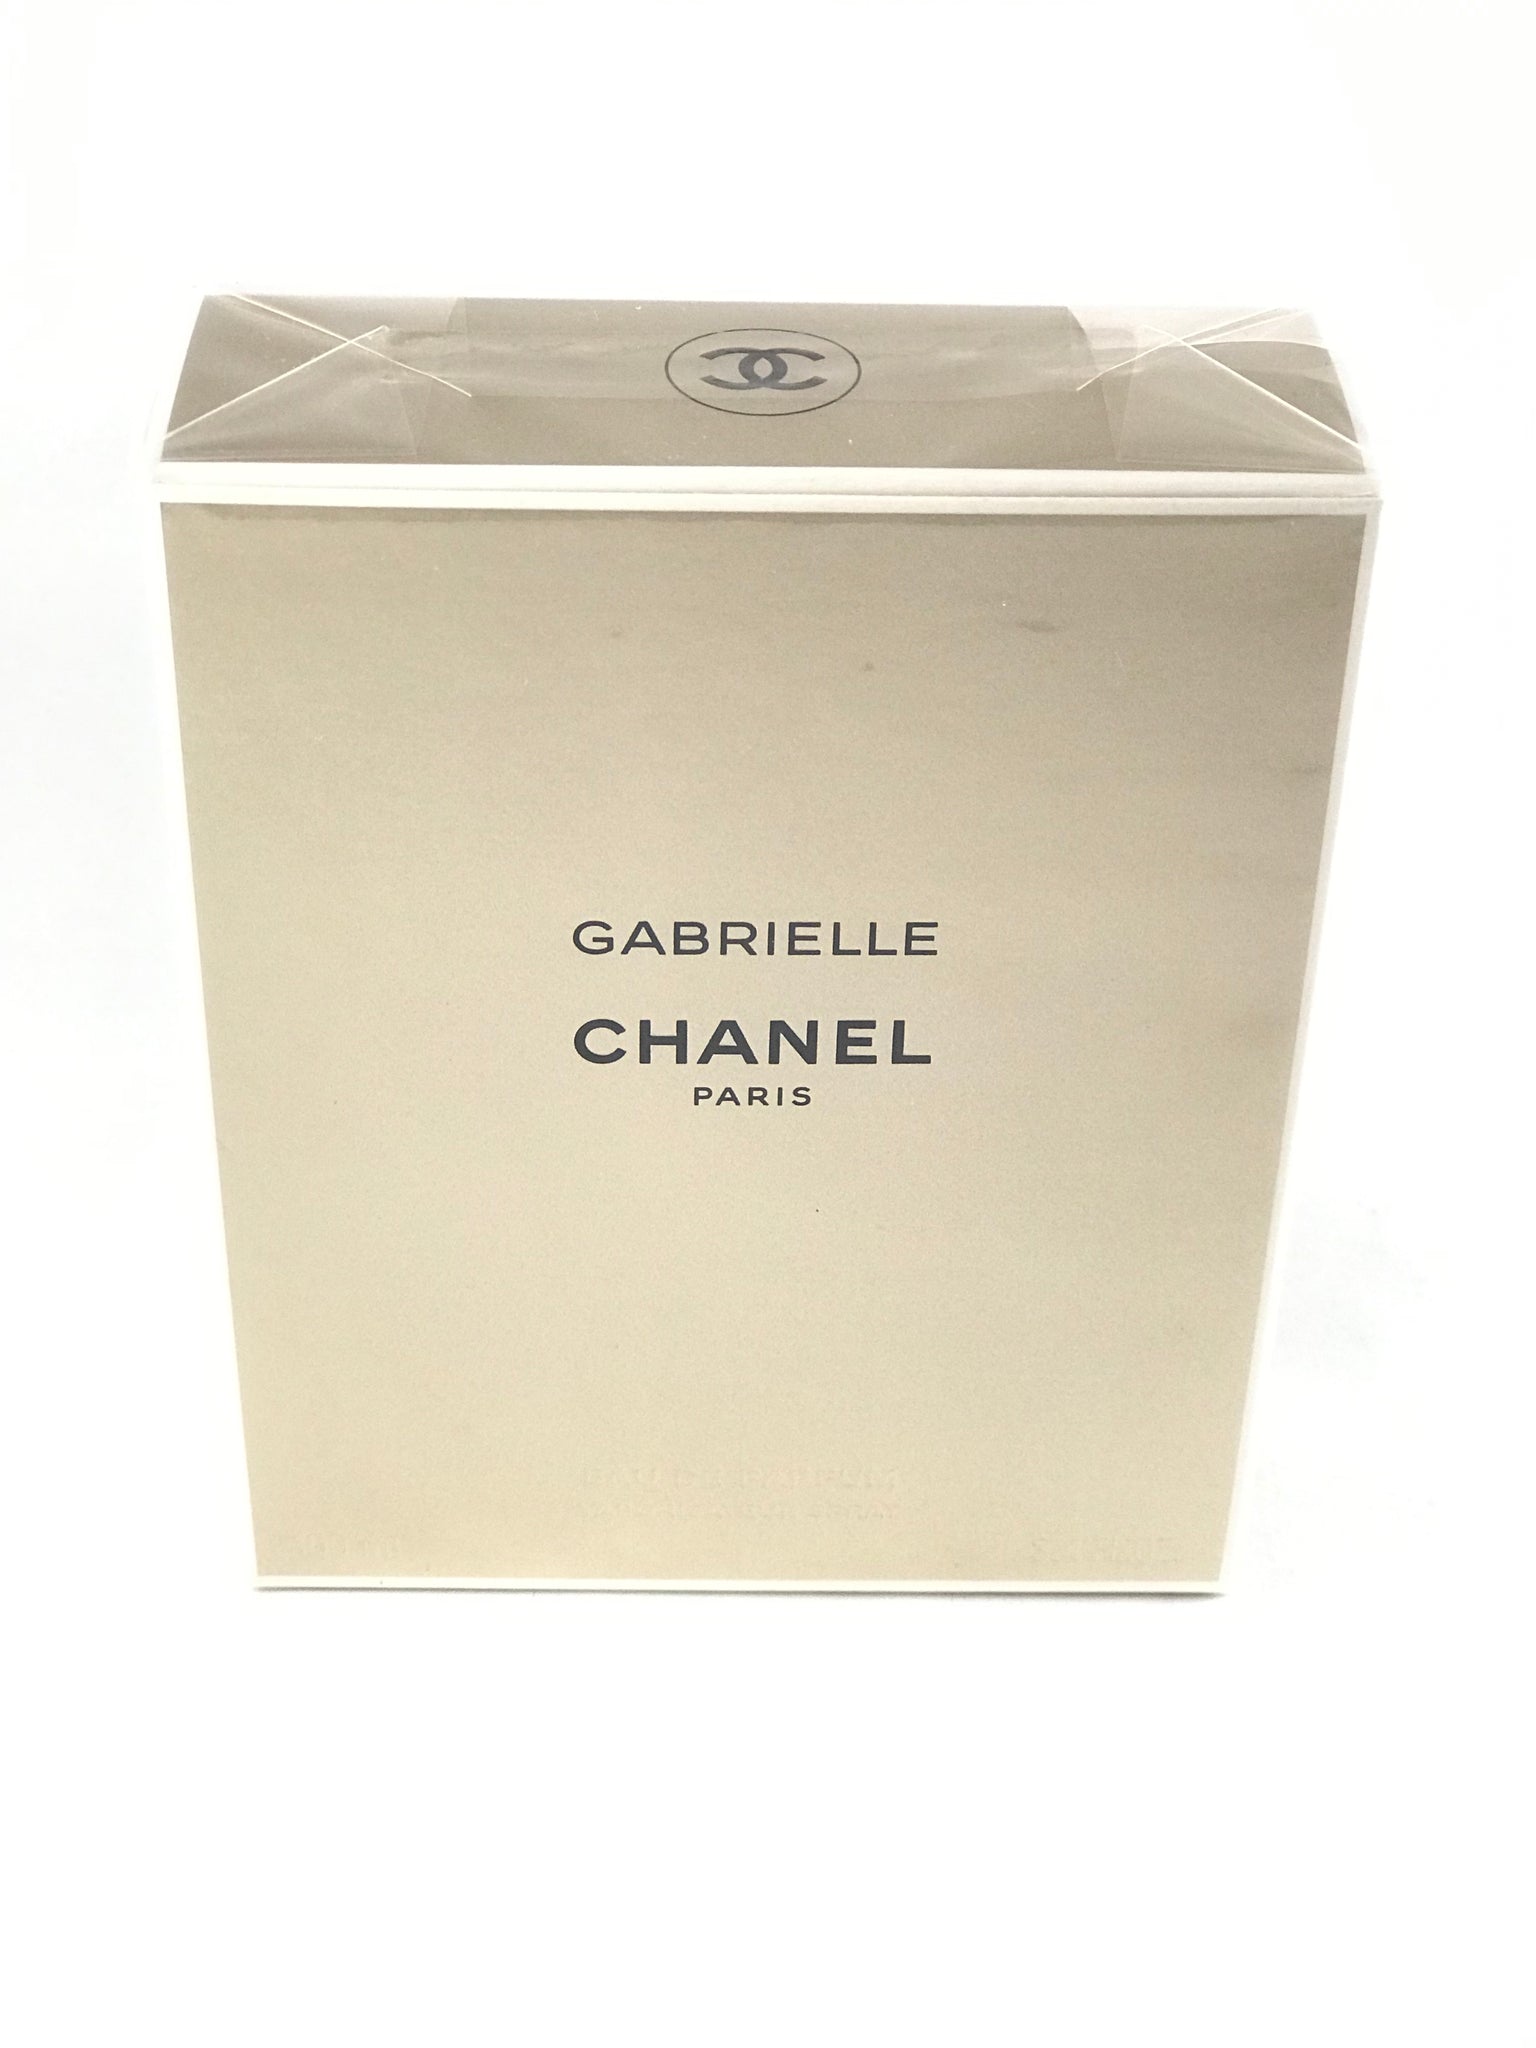 GABRIELLE Eau De Parfum Twist And Spray By Chanel Scent